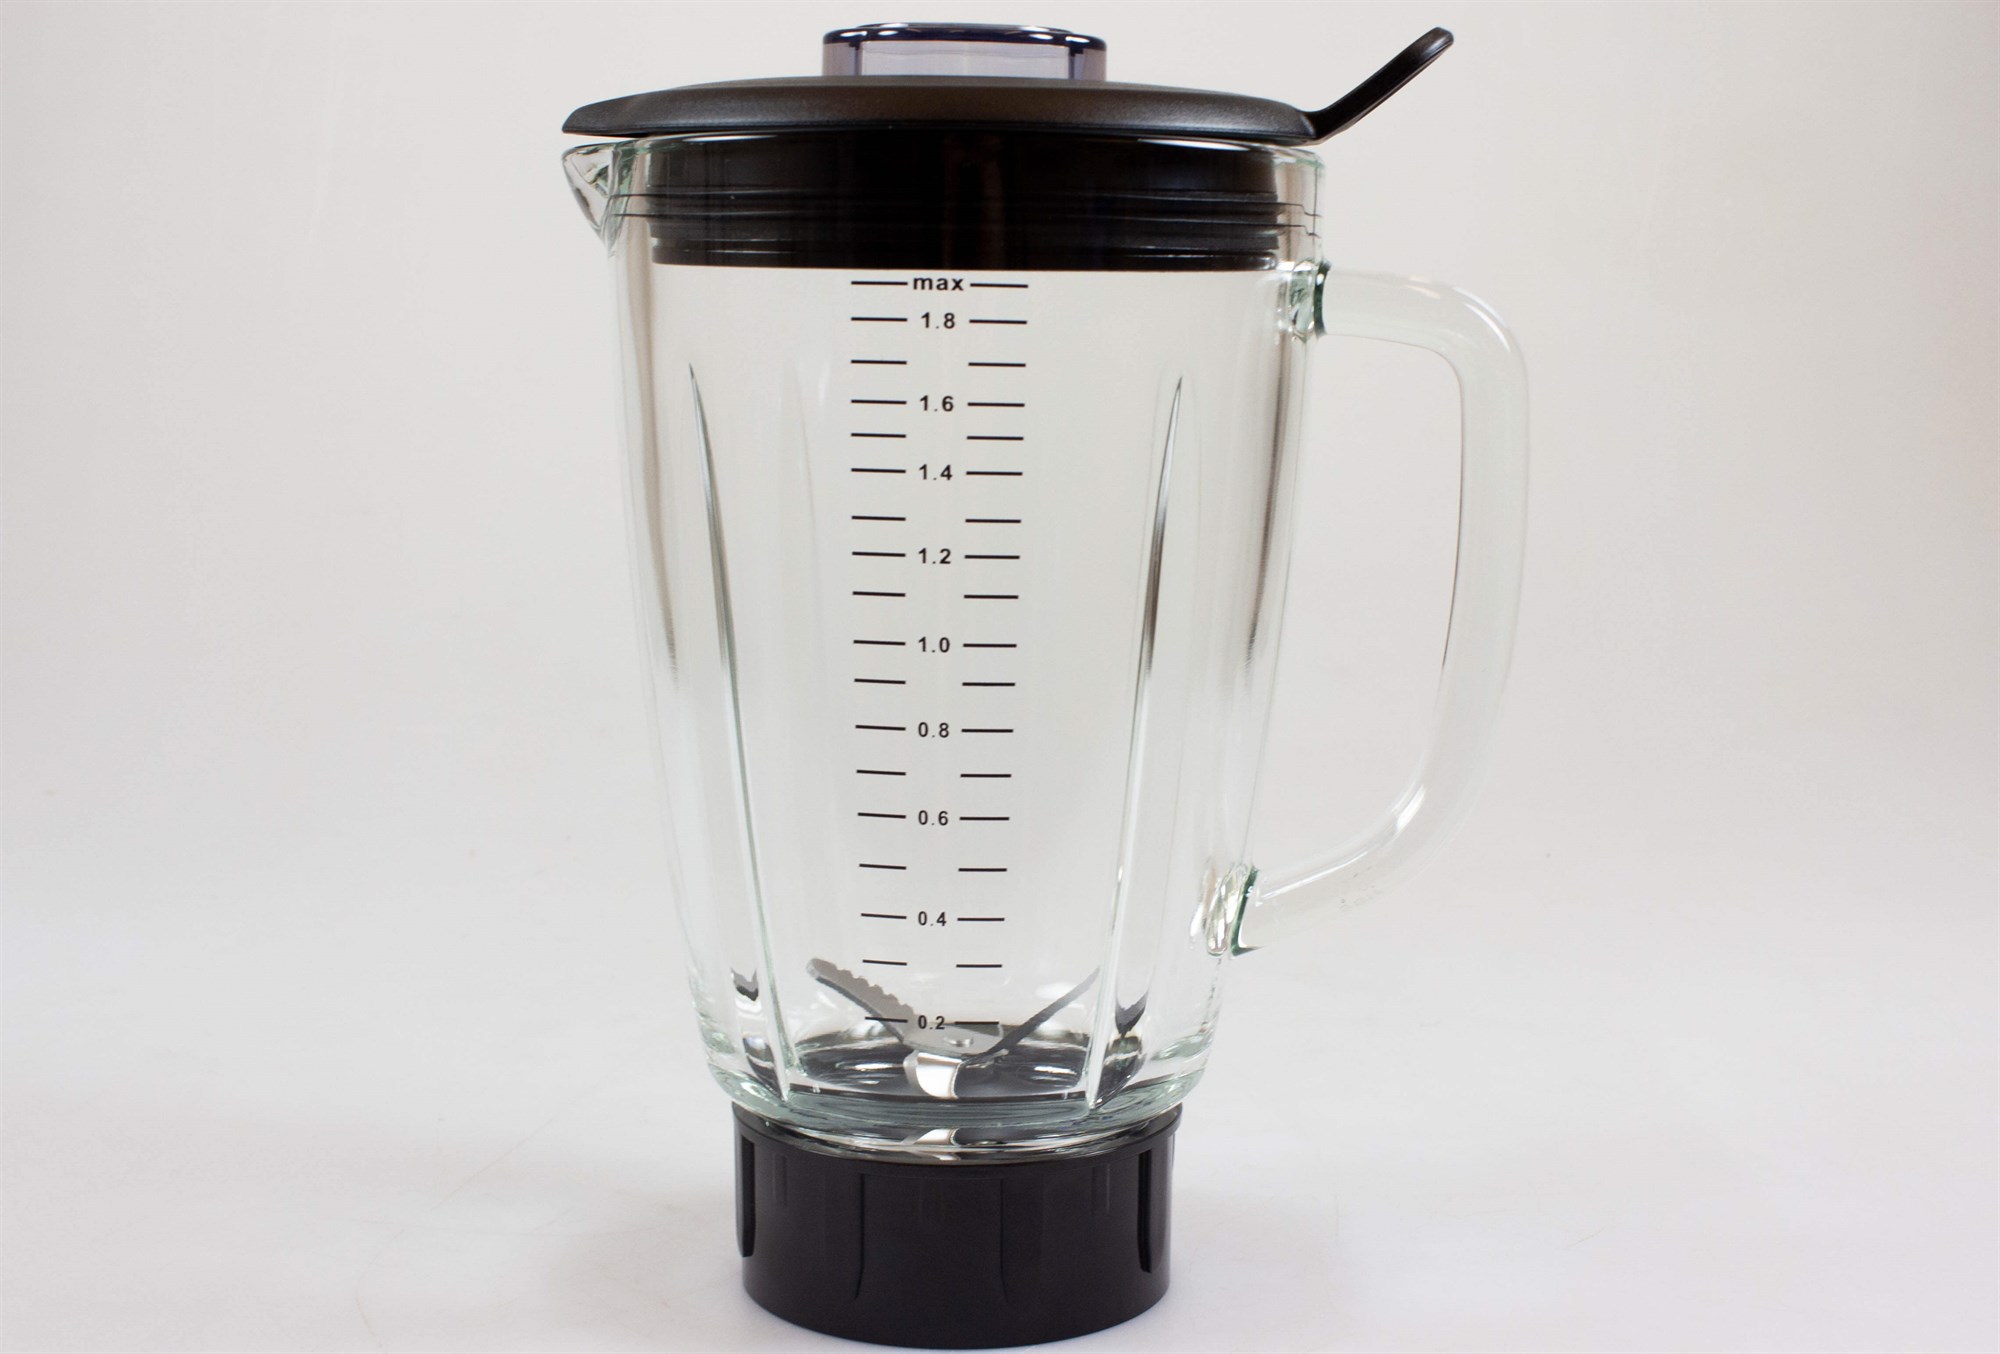 eskortere søm Busk Glass jug, Wilfa blender - XPLODE VITAL (complete)